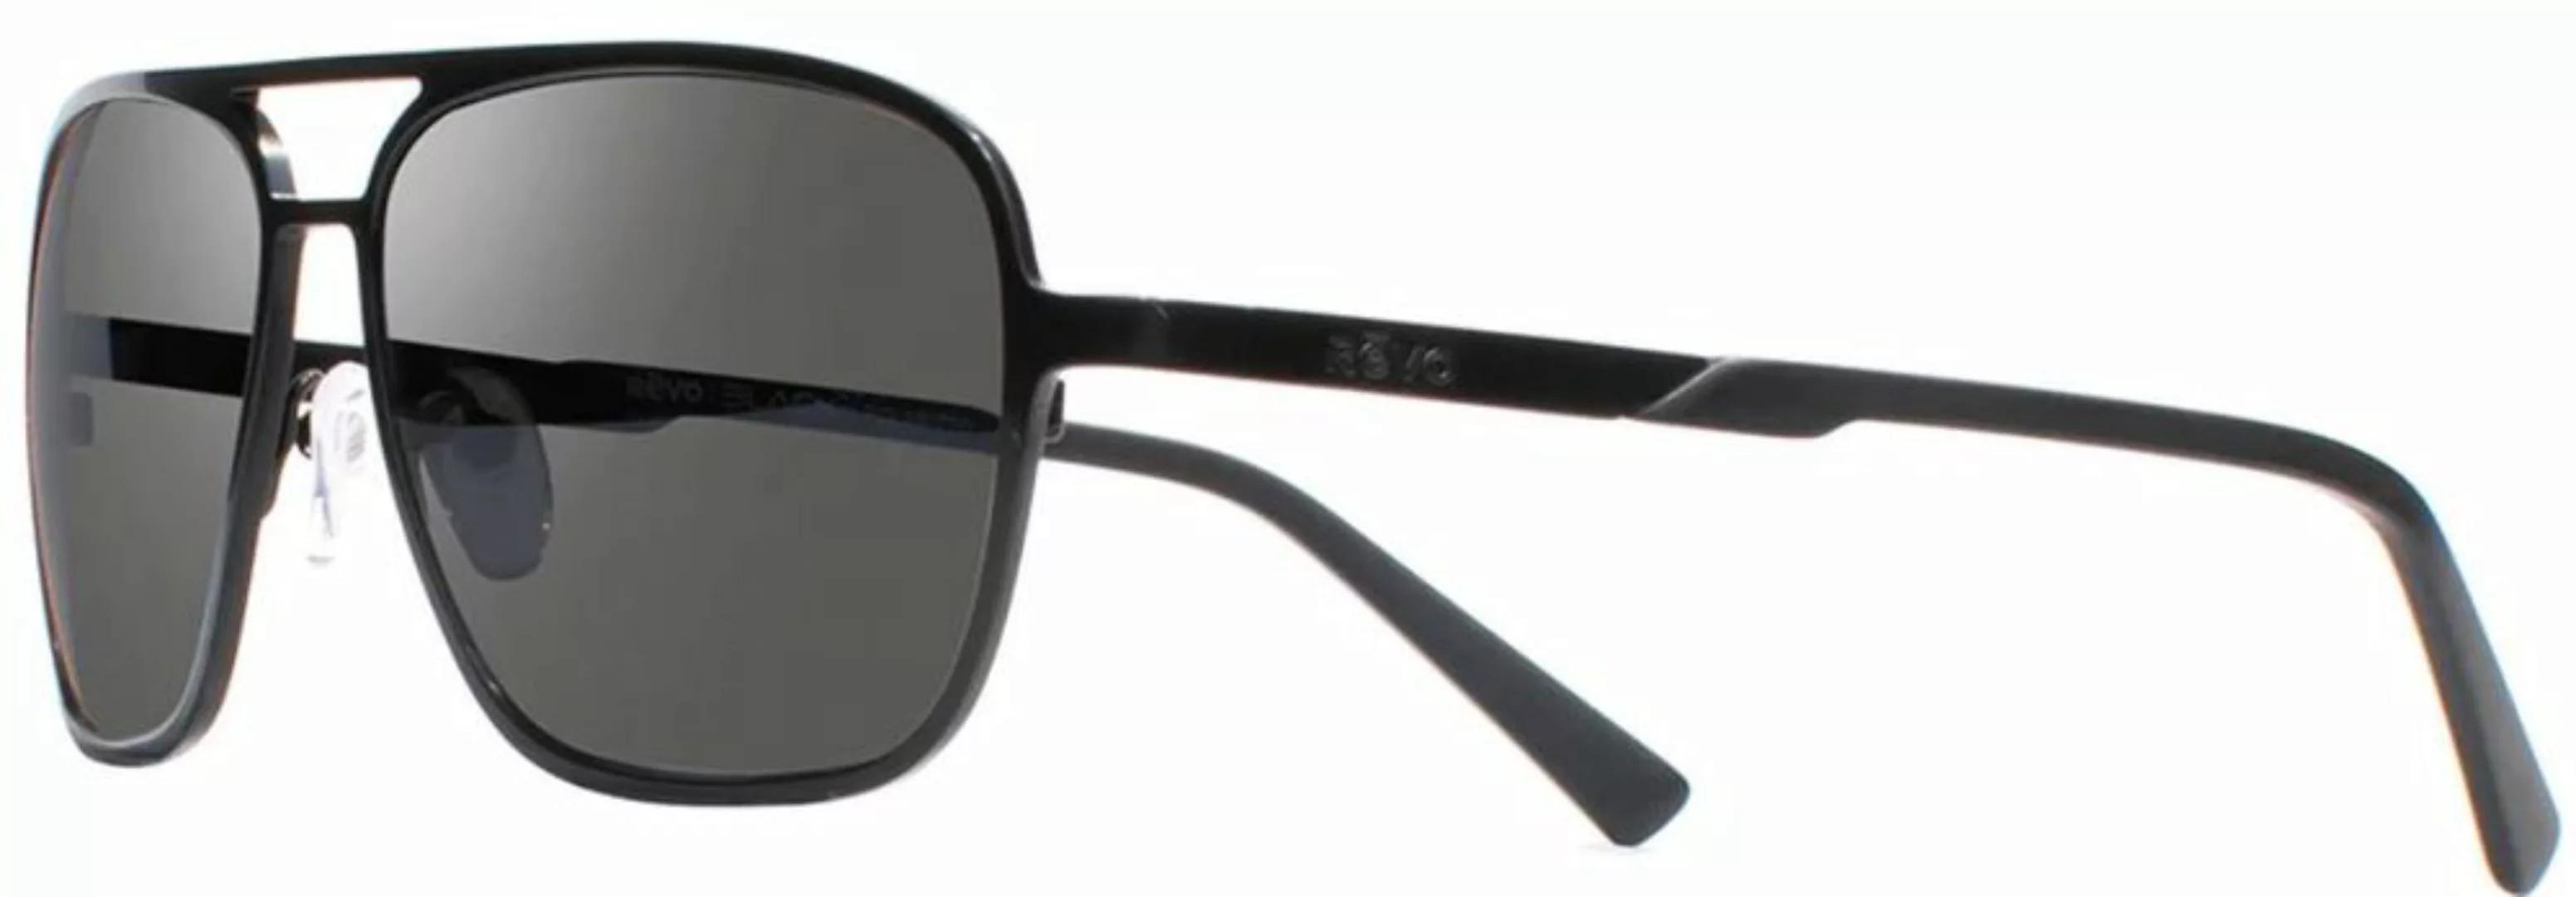 Revo Horizon (RE 1193 01 GY) [Satin Black] - Sonnenbrille günstig online kaufen